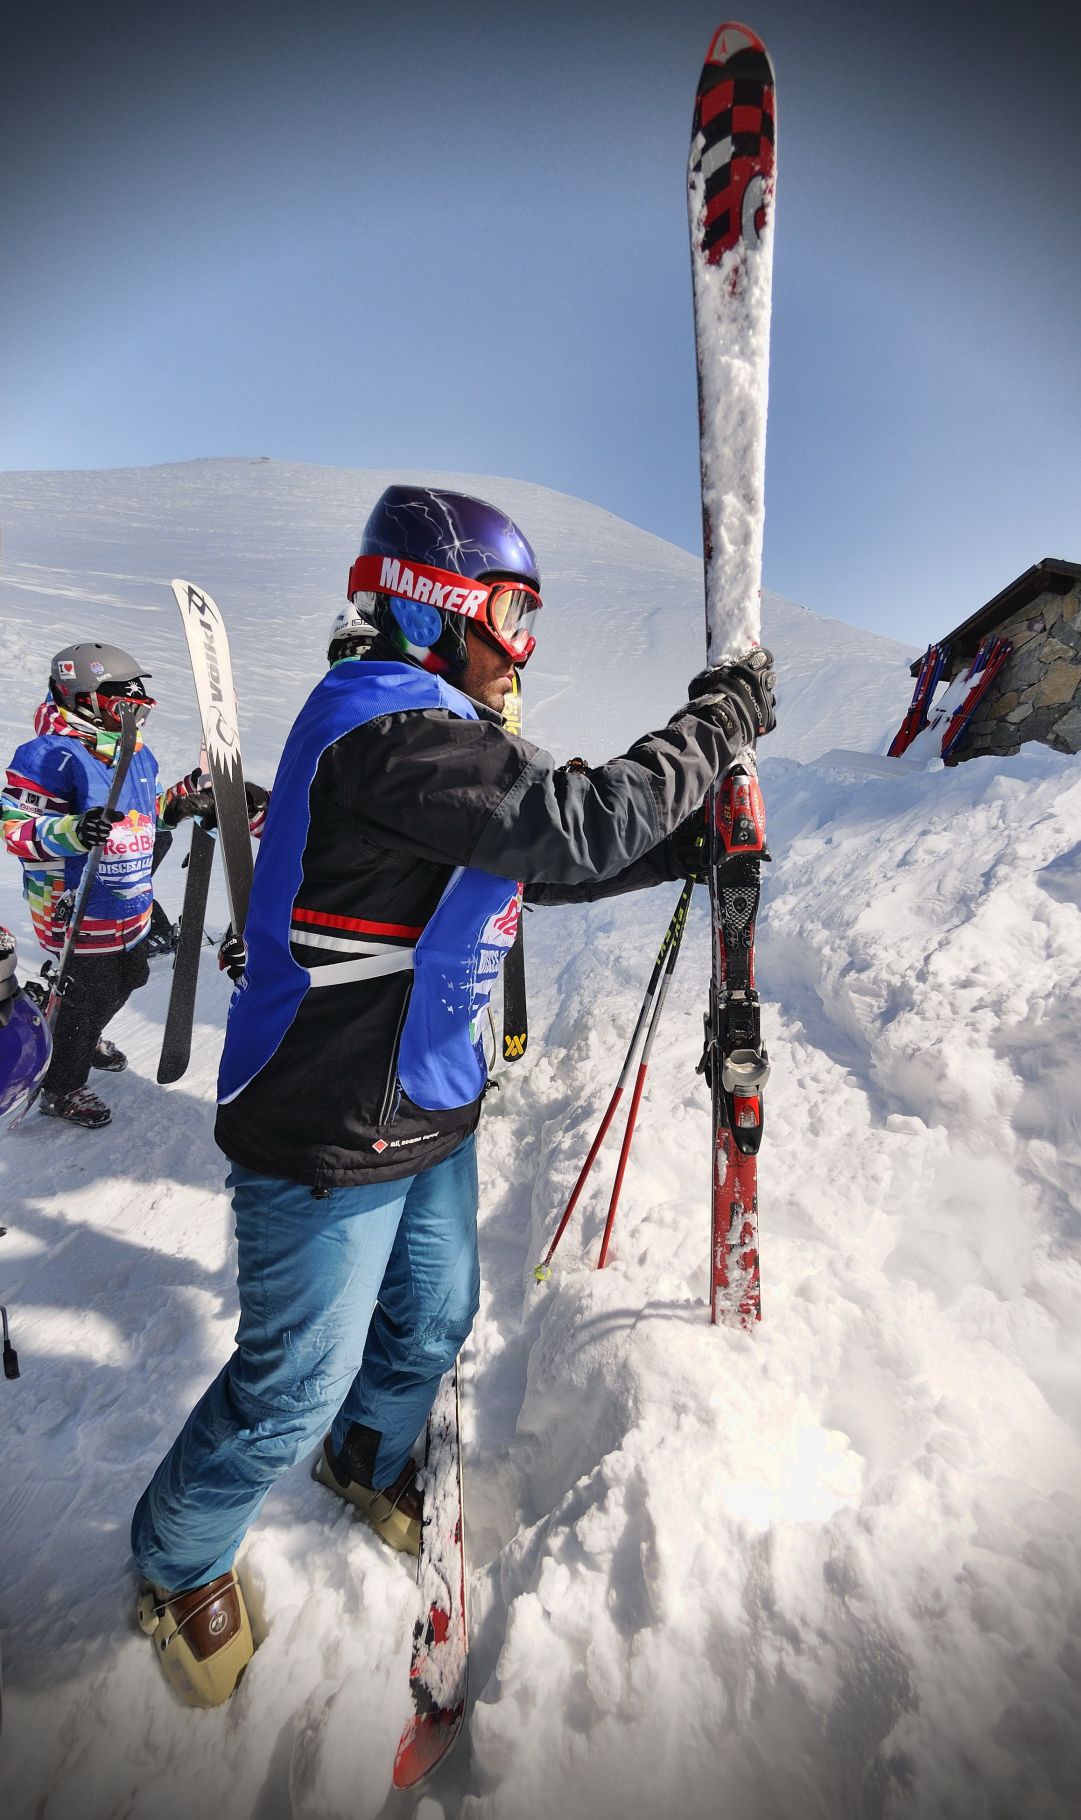 Foto scattata durante l'evento Red Bull Discesa Libera
Skier: Andrea Bergamasco 1° class
Foto: Matteo Ganora Nikon D300s 